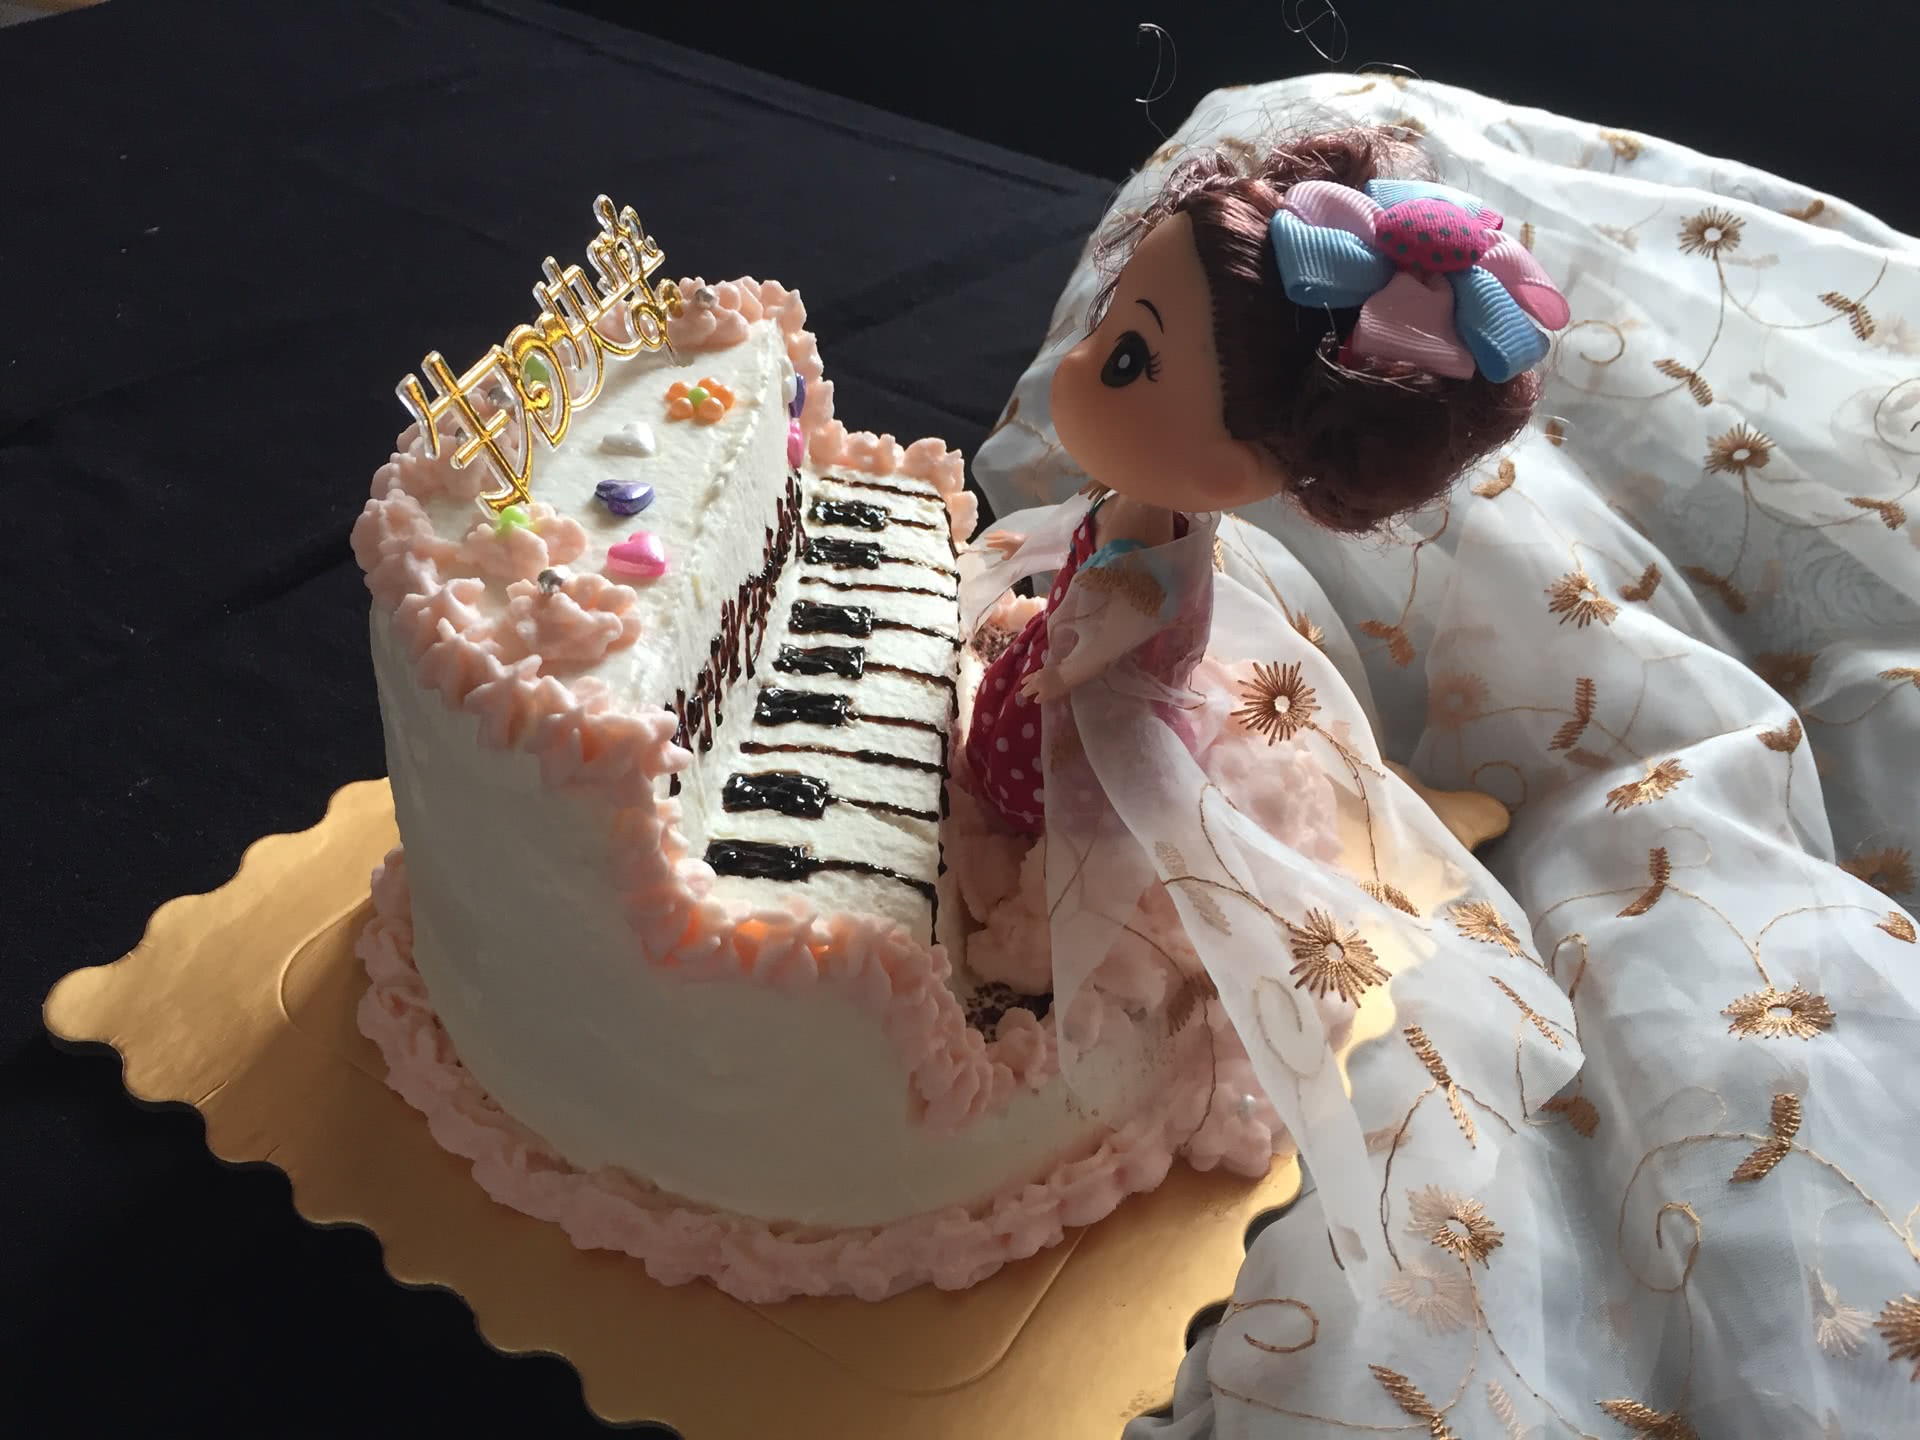 钢琴娃娃生日蛋糕裱花蛋糕#相约MOF#的做法_【图解】钢琴娃娃生日蛋糕裱花蛋糕#相约MOF#怎么做如何做好吃_钢琴娃娃生日蛋糕裱花蛋糕#相约MOF#家常做法大全_桔子甜品_豆果美食